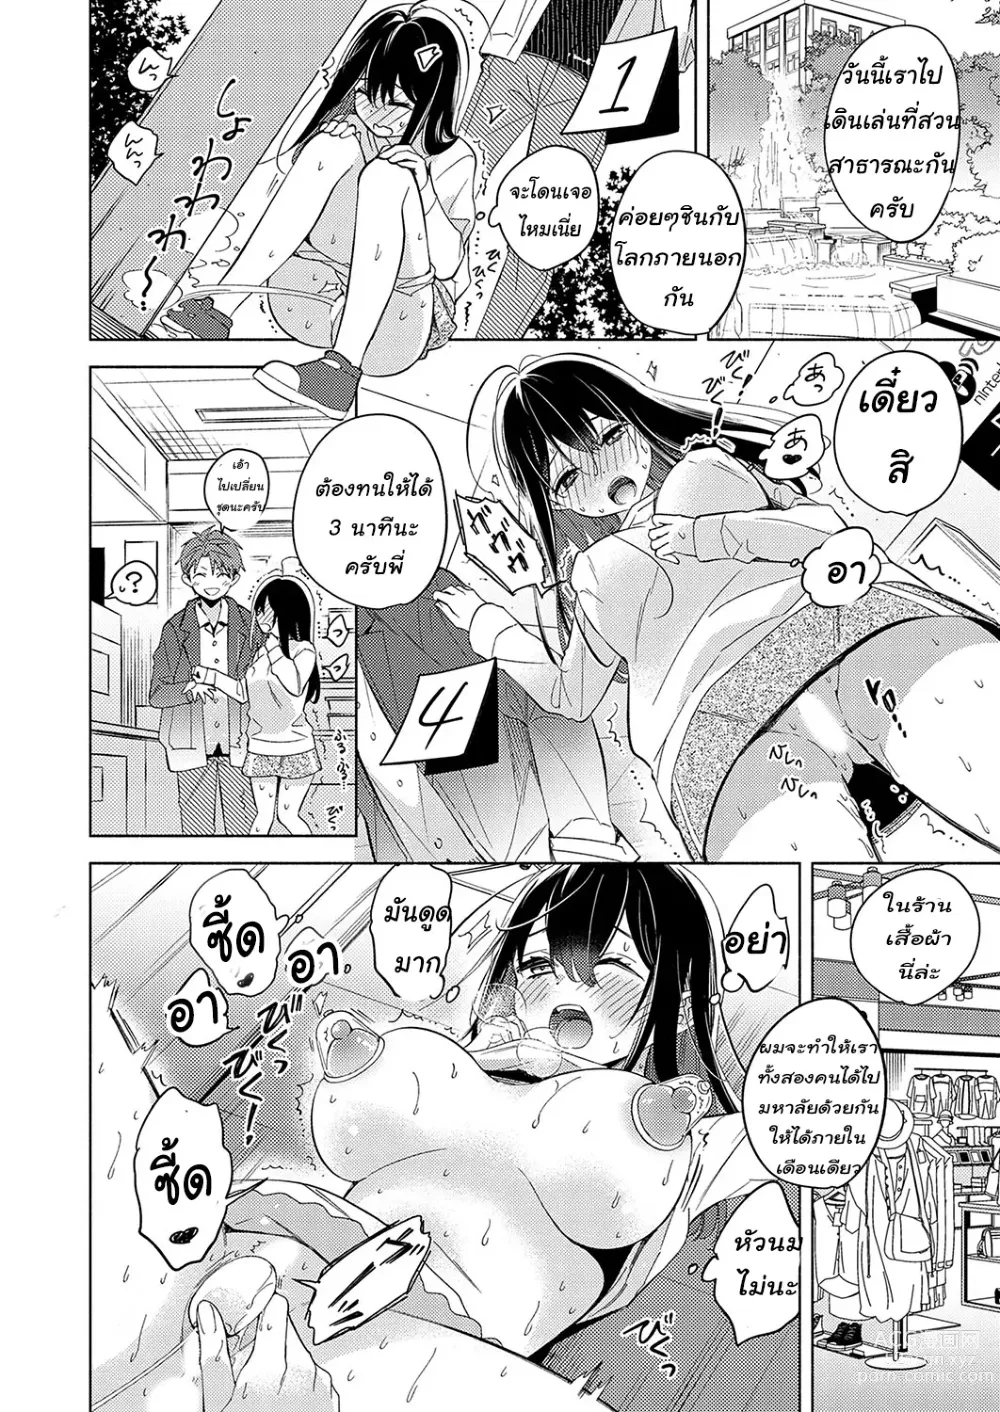 Page 10 of manga Neechan ga doukyusei ni naru made 30-nichi - onani chudoku ane no hiki komori dasshutsu keikaku